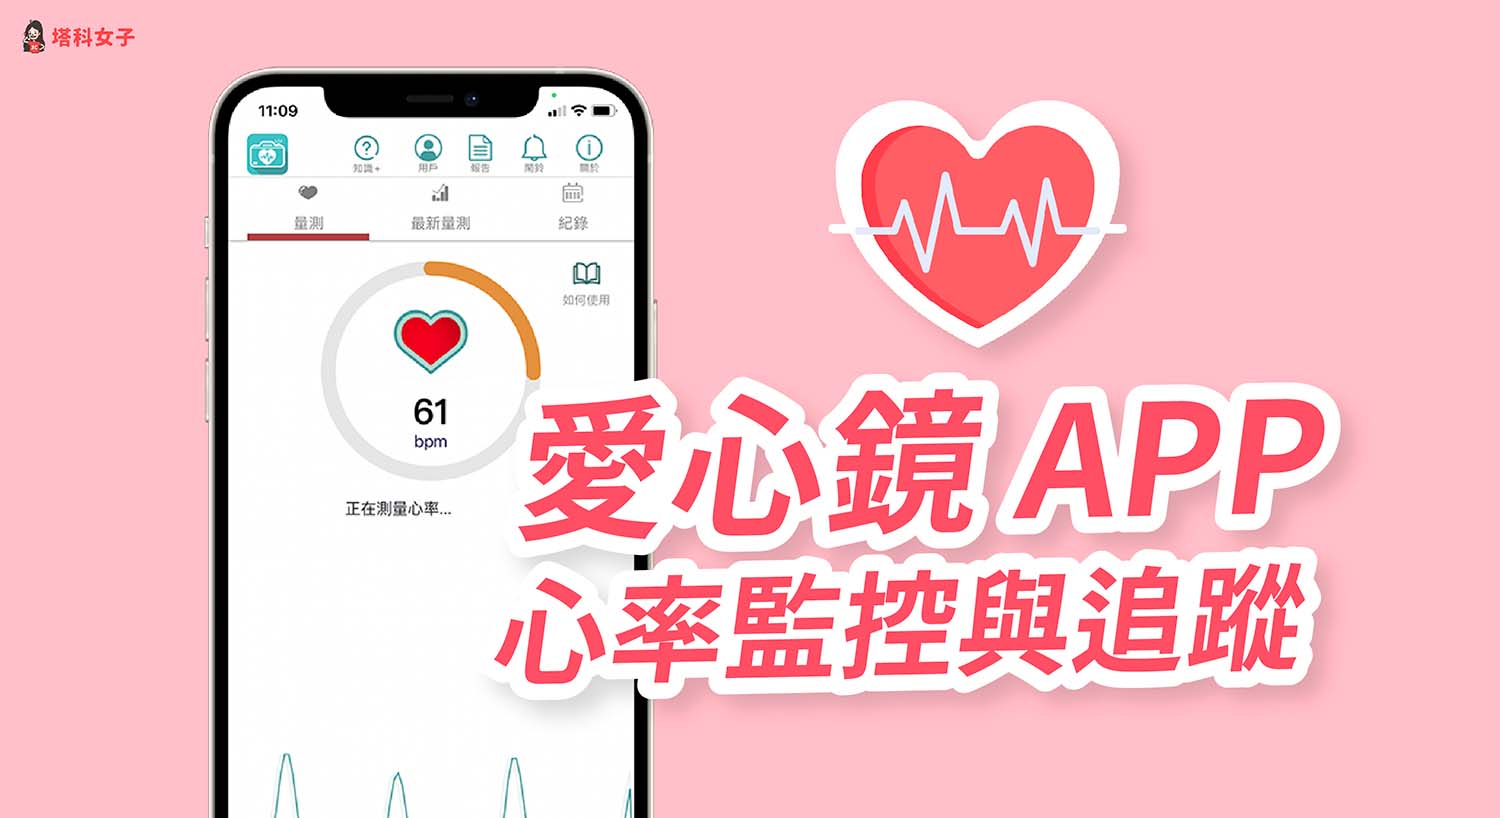 愛心鏡 App 可測量心率及心律規律性，追蹤並紀錄心率監測